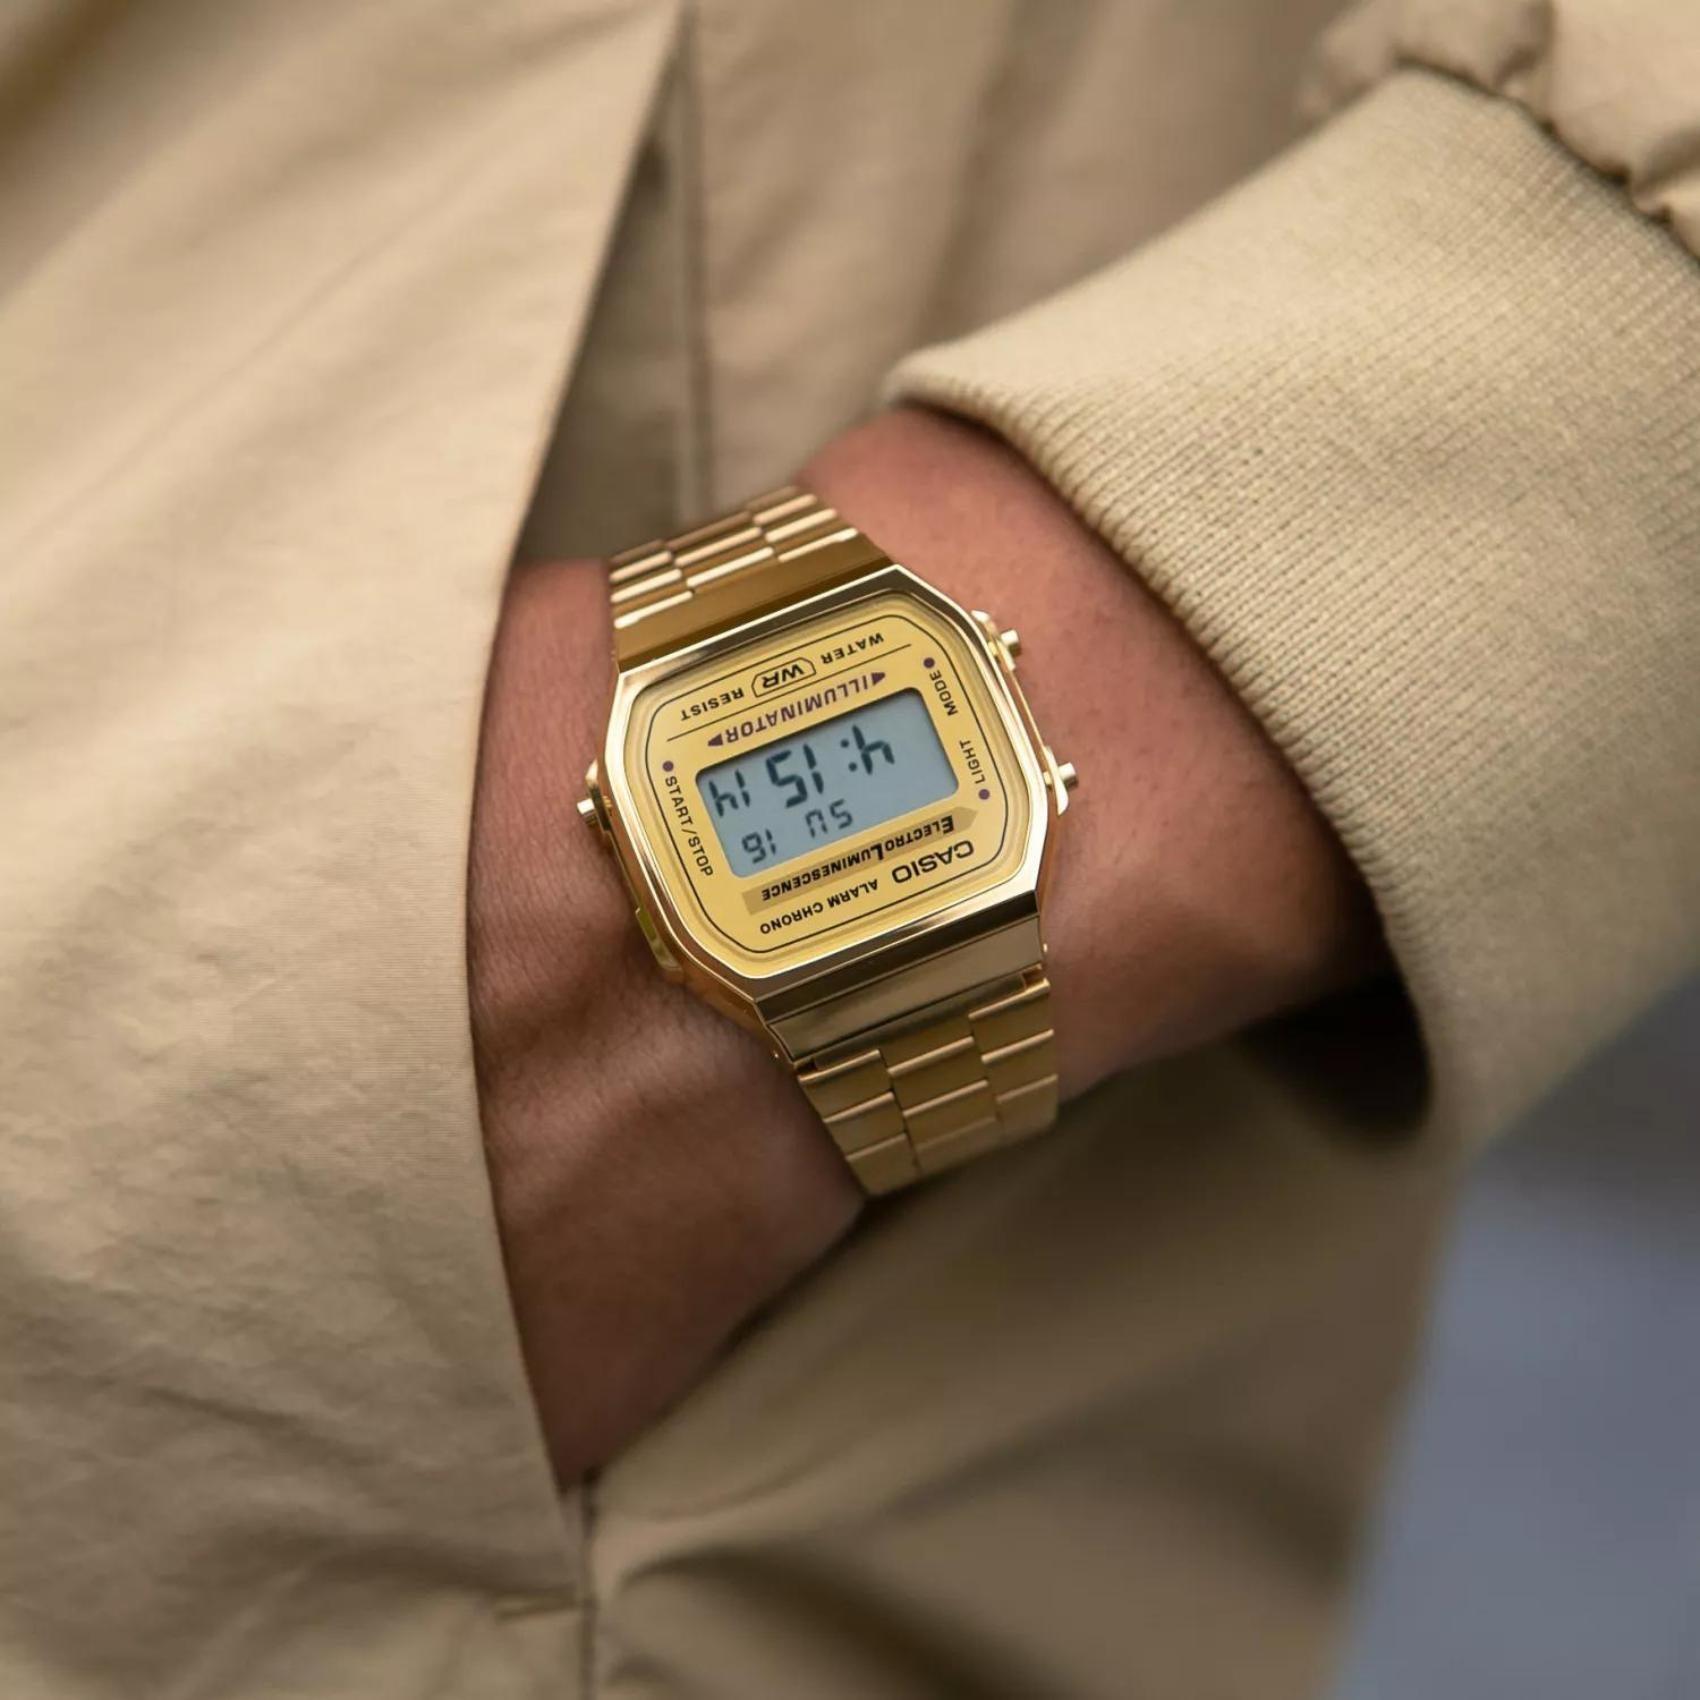 Ρολόι χρονογράφος Casio Vintage Iconic A-168WG-9EF με χρυσό ατσάλινο μπρασελέ, χρυσό καντράν σε τετράγωνο σχημα με ψηφιακή ένδειξη και στεγανότητα 5ATM-50Μ.